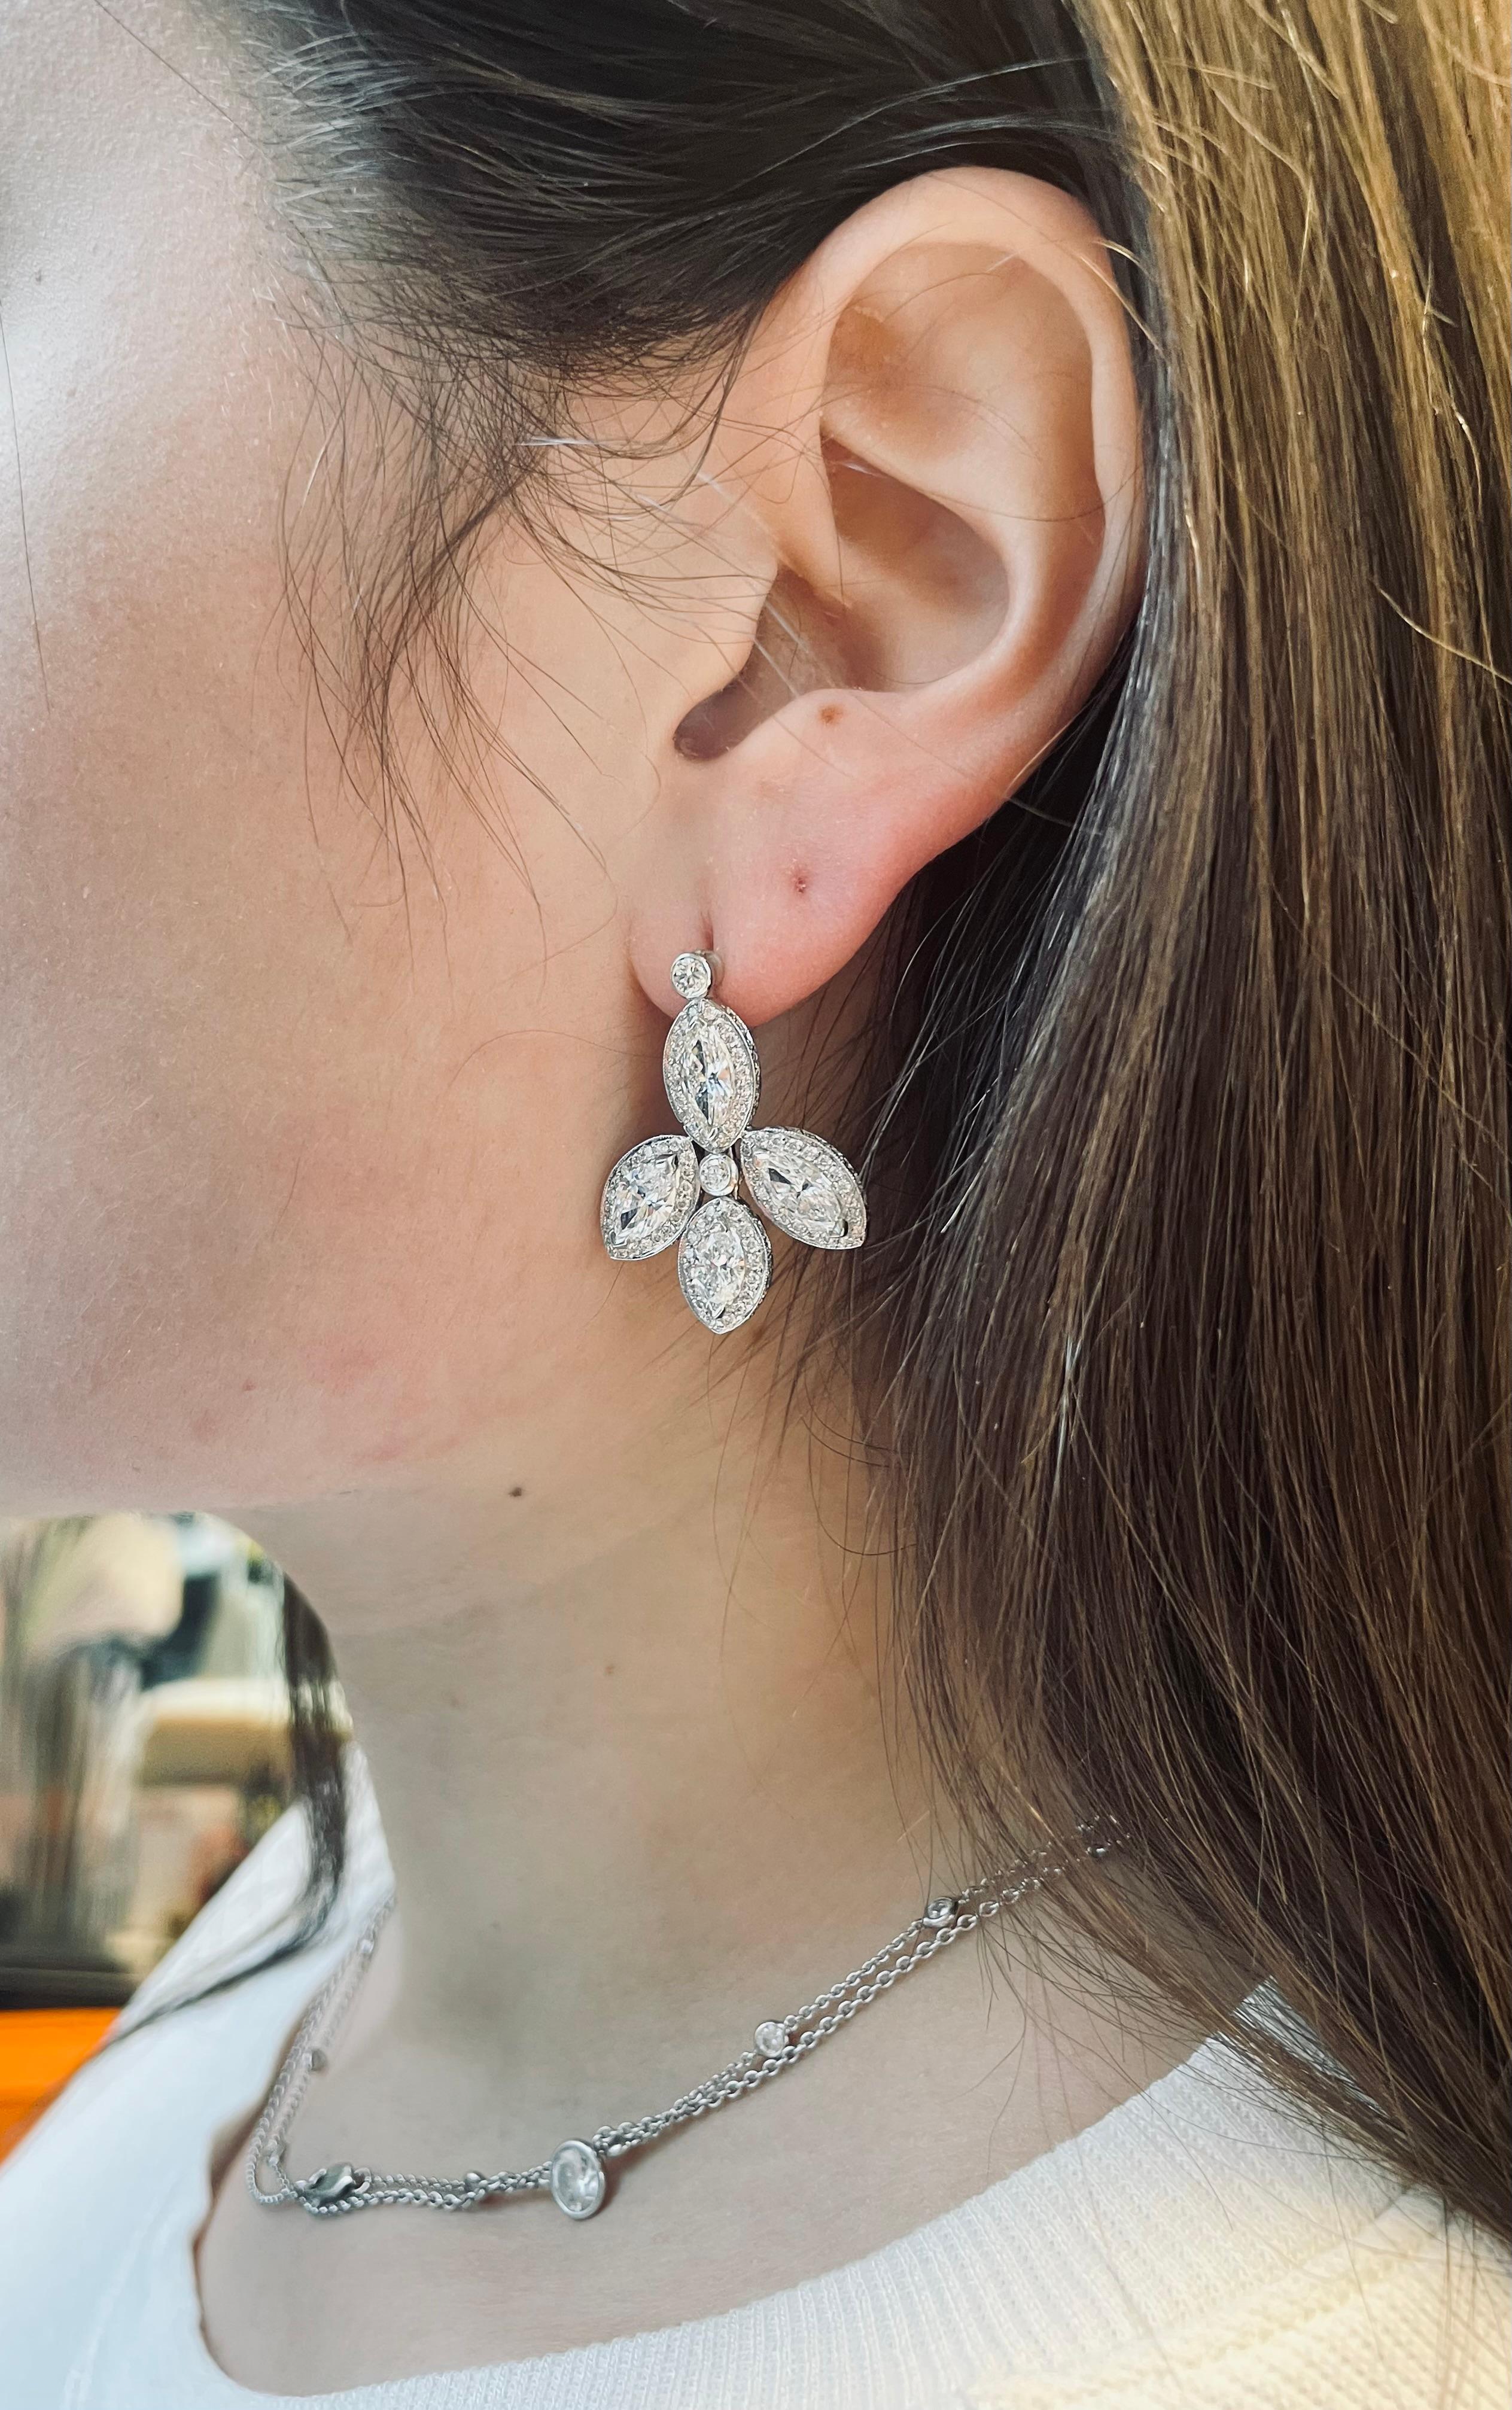 Ce magnifique ensemble de boucles d'oreilles pendantes en diamants sur le thème de la feuille présente quatre diamants marquises encadrés de micro-pavés. Le poids total de ces boucles d'oreilles est d'environ 7 carats. Ces boucles d'oreilles